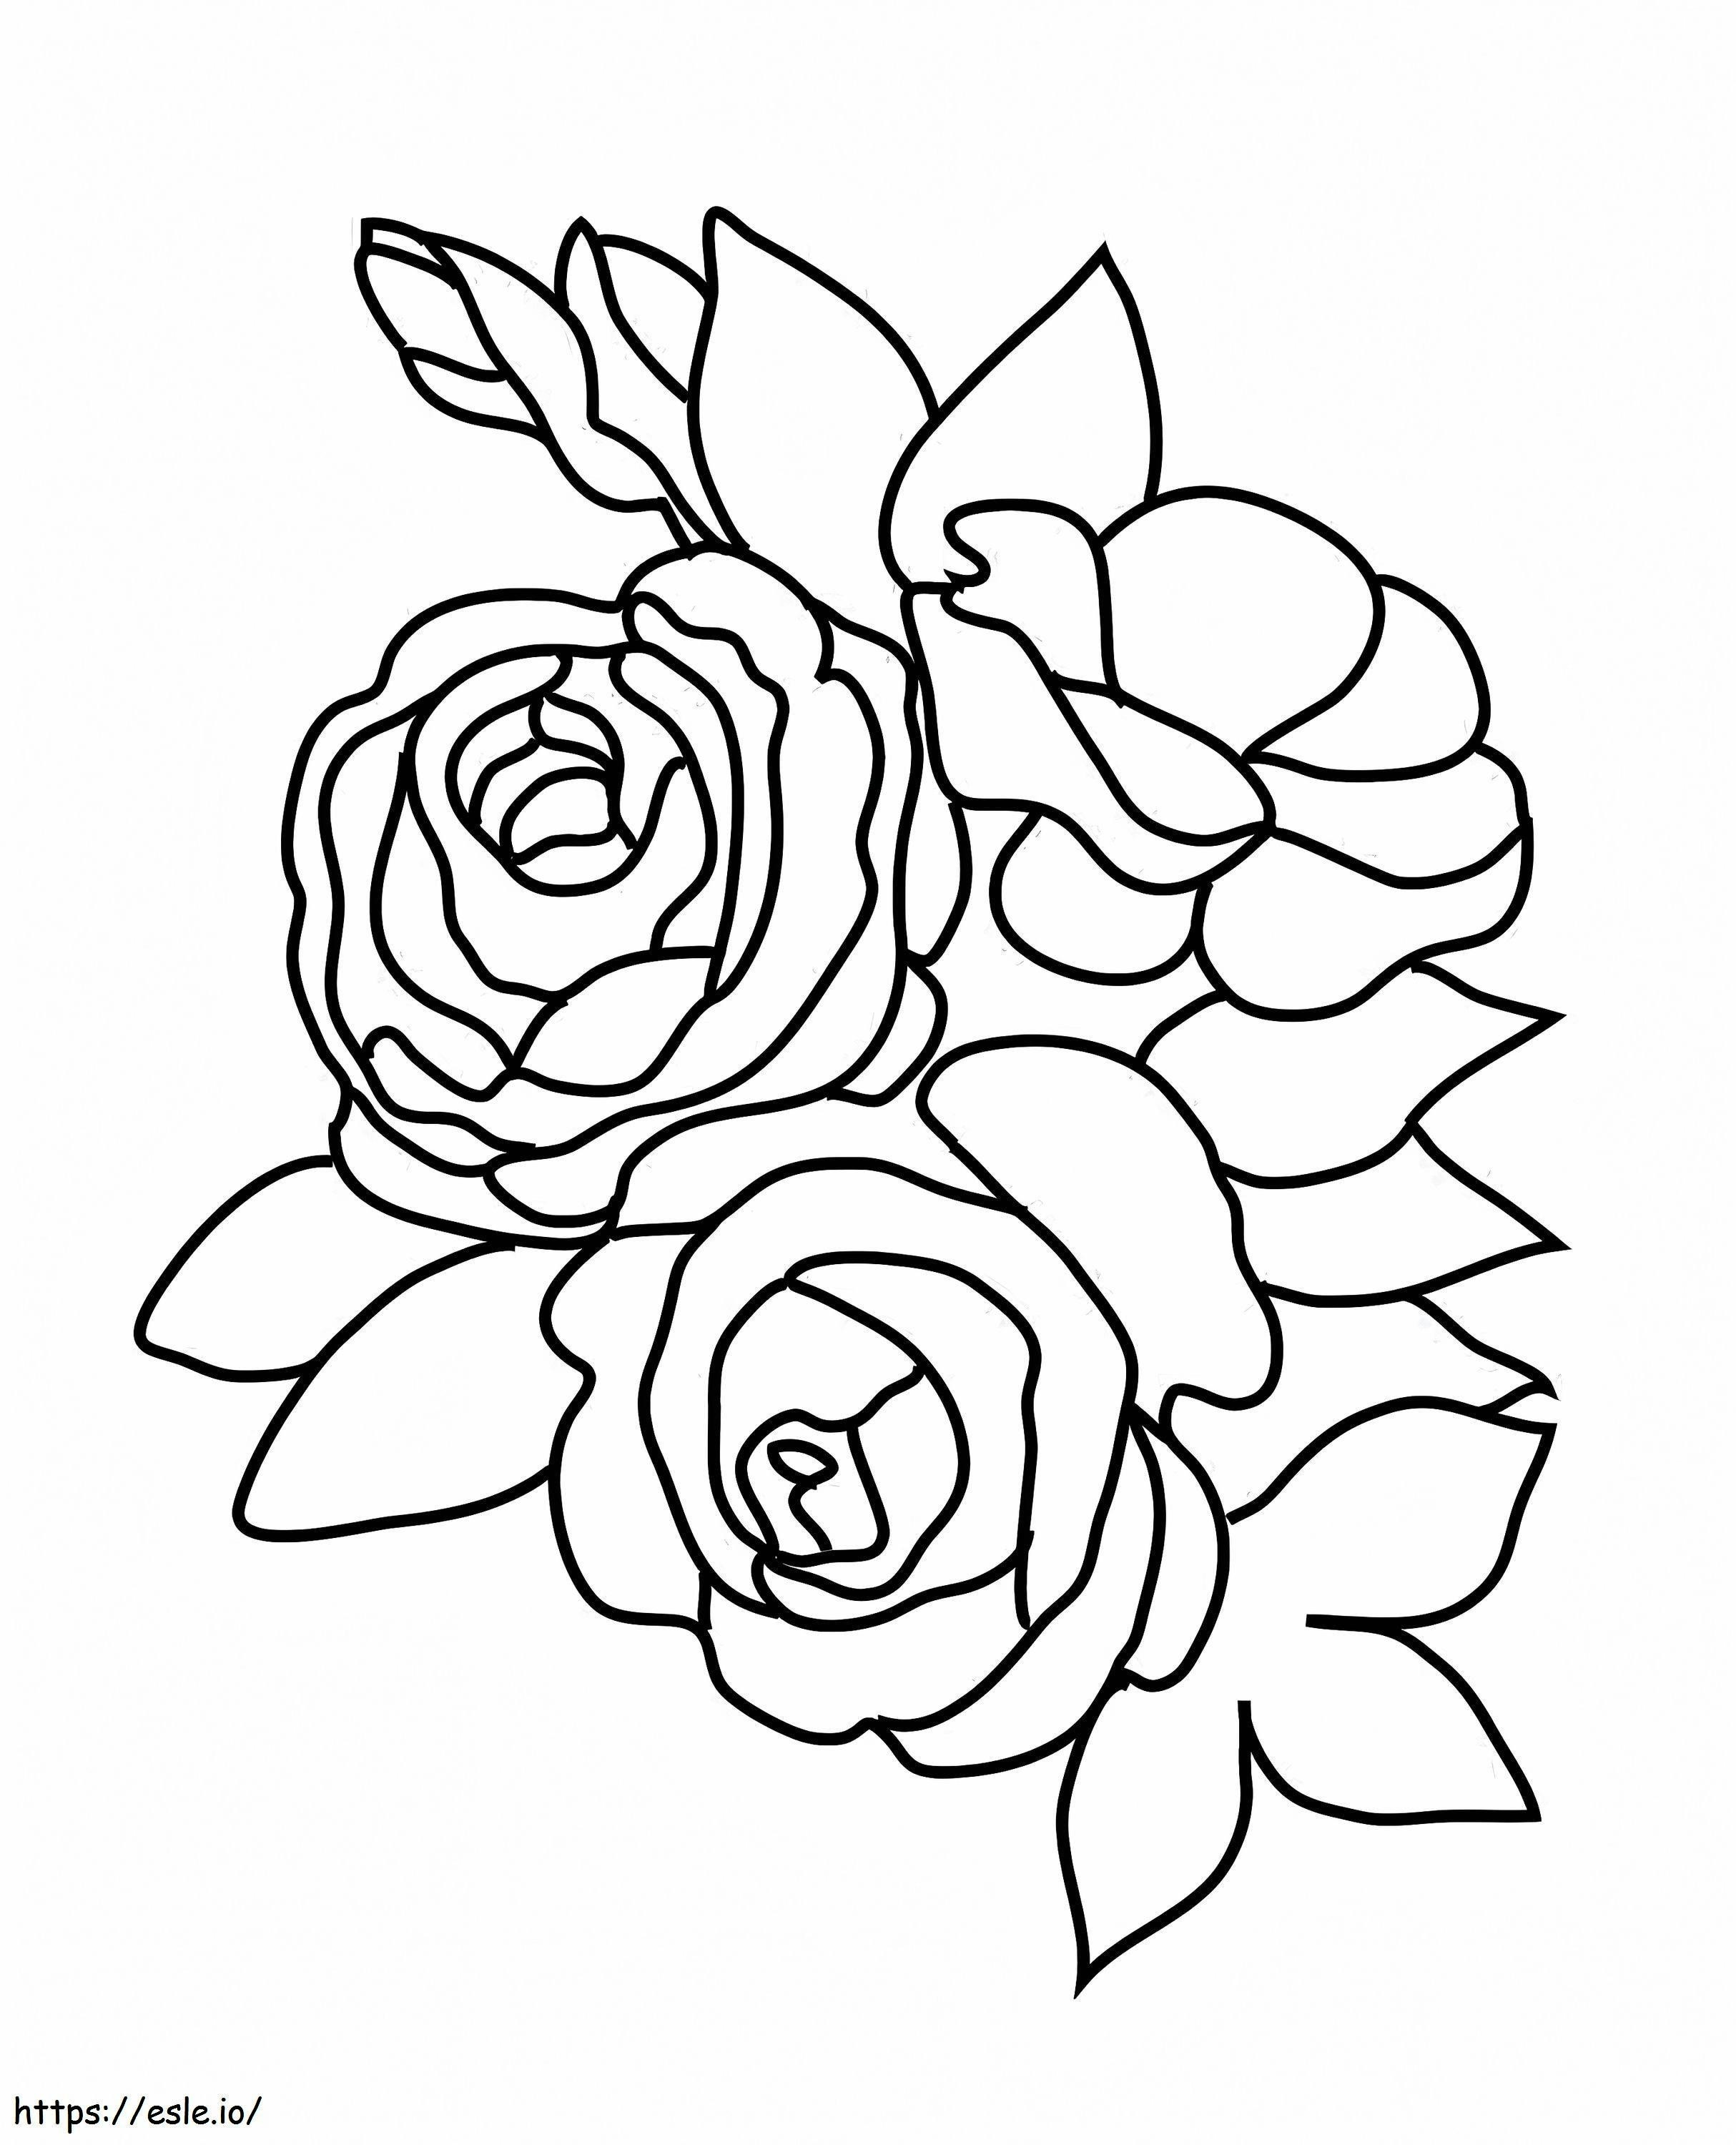 Teken- en kleurplaten Flower Outstanding Three Roses Leaves Kaiju For Kids Dbs kleurplaat kleurplaat